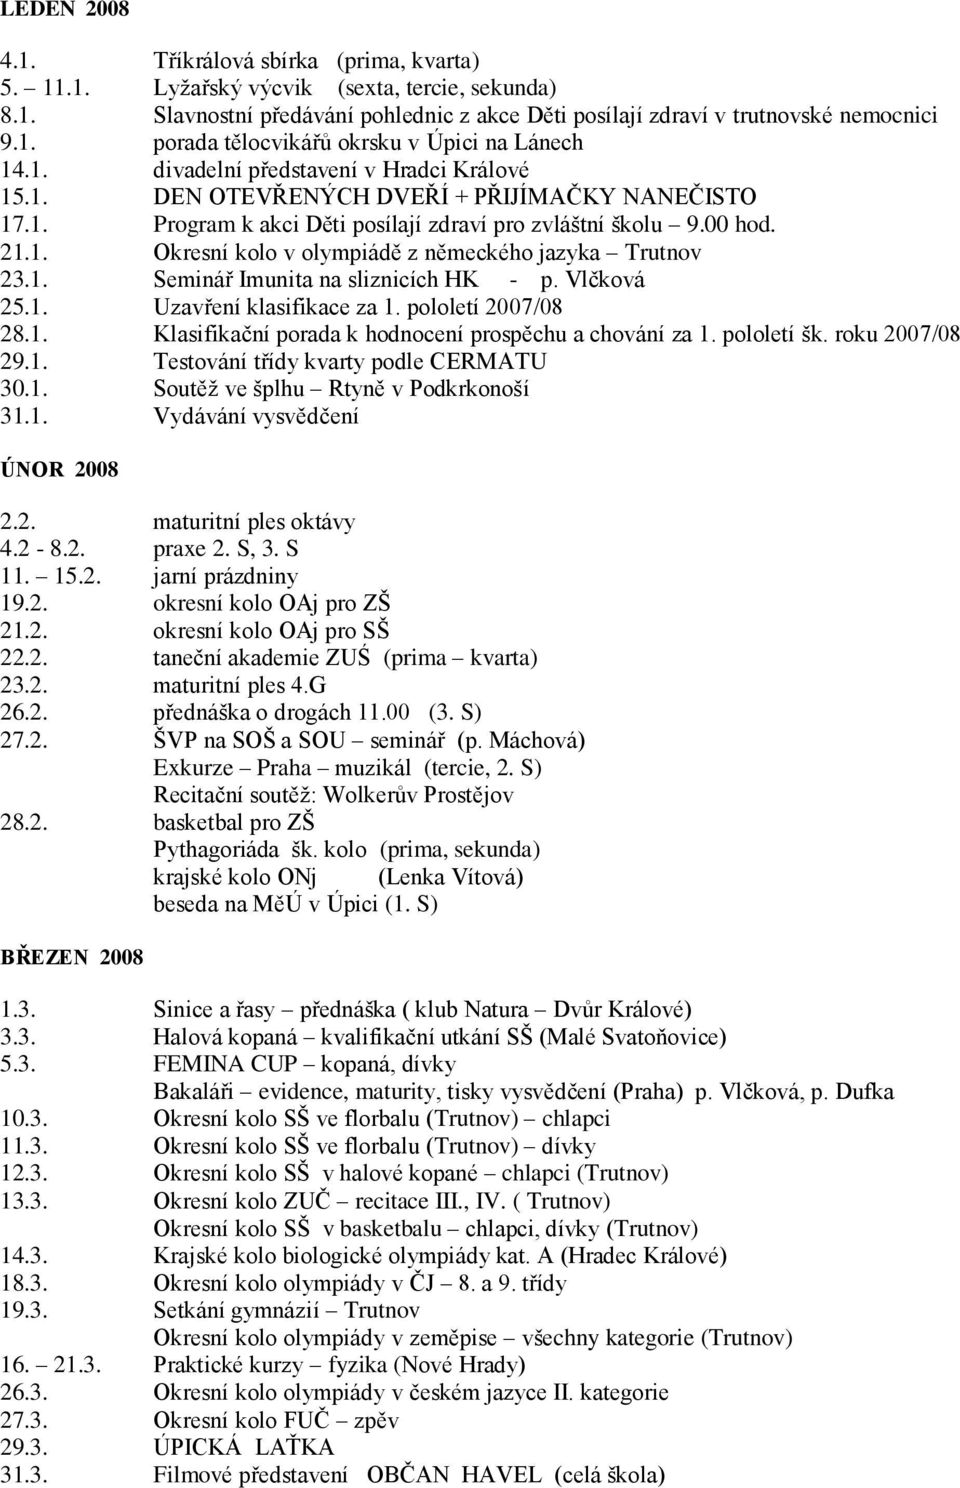 1. Seminář Imunita na sliznicích HK - p. Vlčková 25.1. Uzavření klasifikace za 1. pololetí 2007/08 28.1. Klasifikační porada k hodnocení prospěchu a chování za 1. pololetí šk. roku 2007/08 29.1. Testování třídy kvarty podle CERMATU 30.